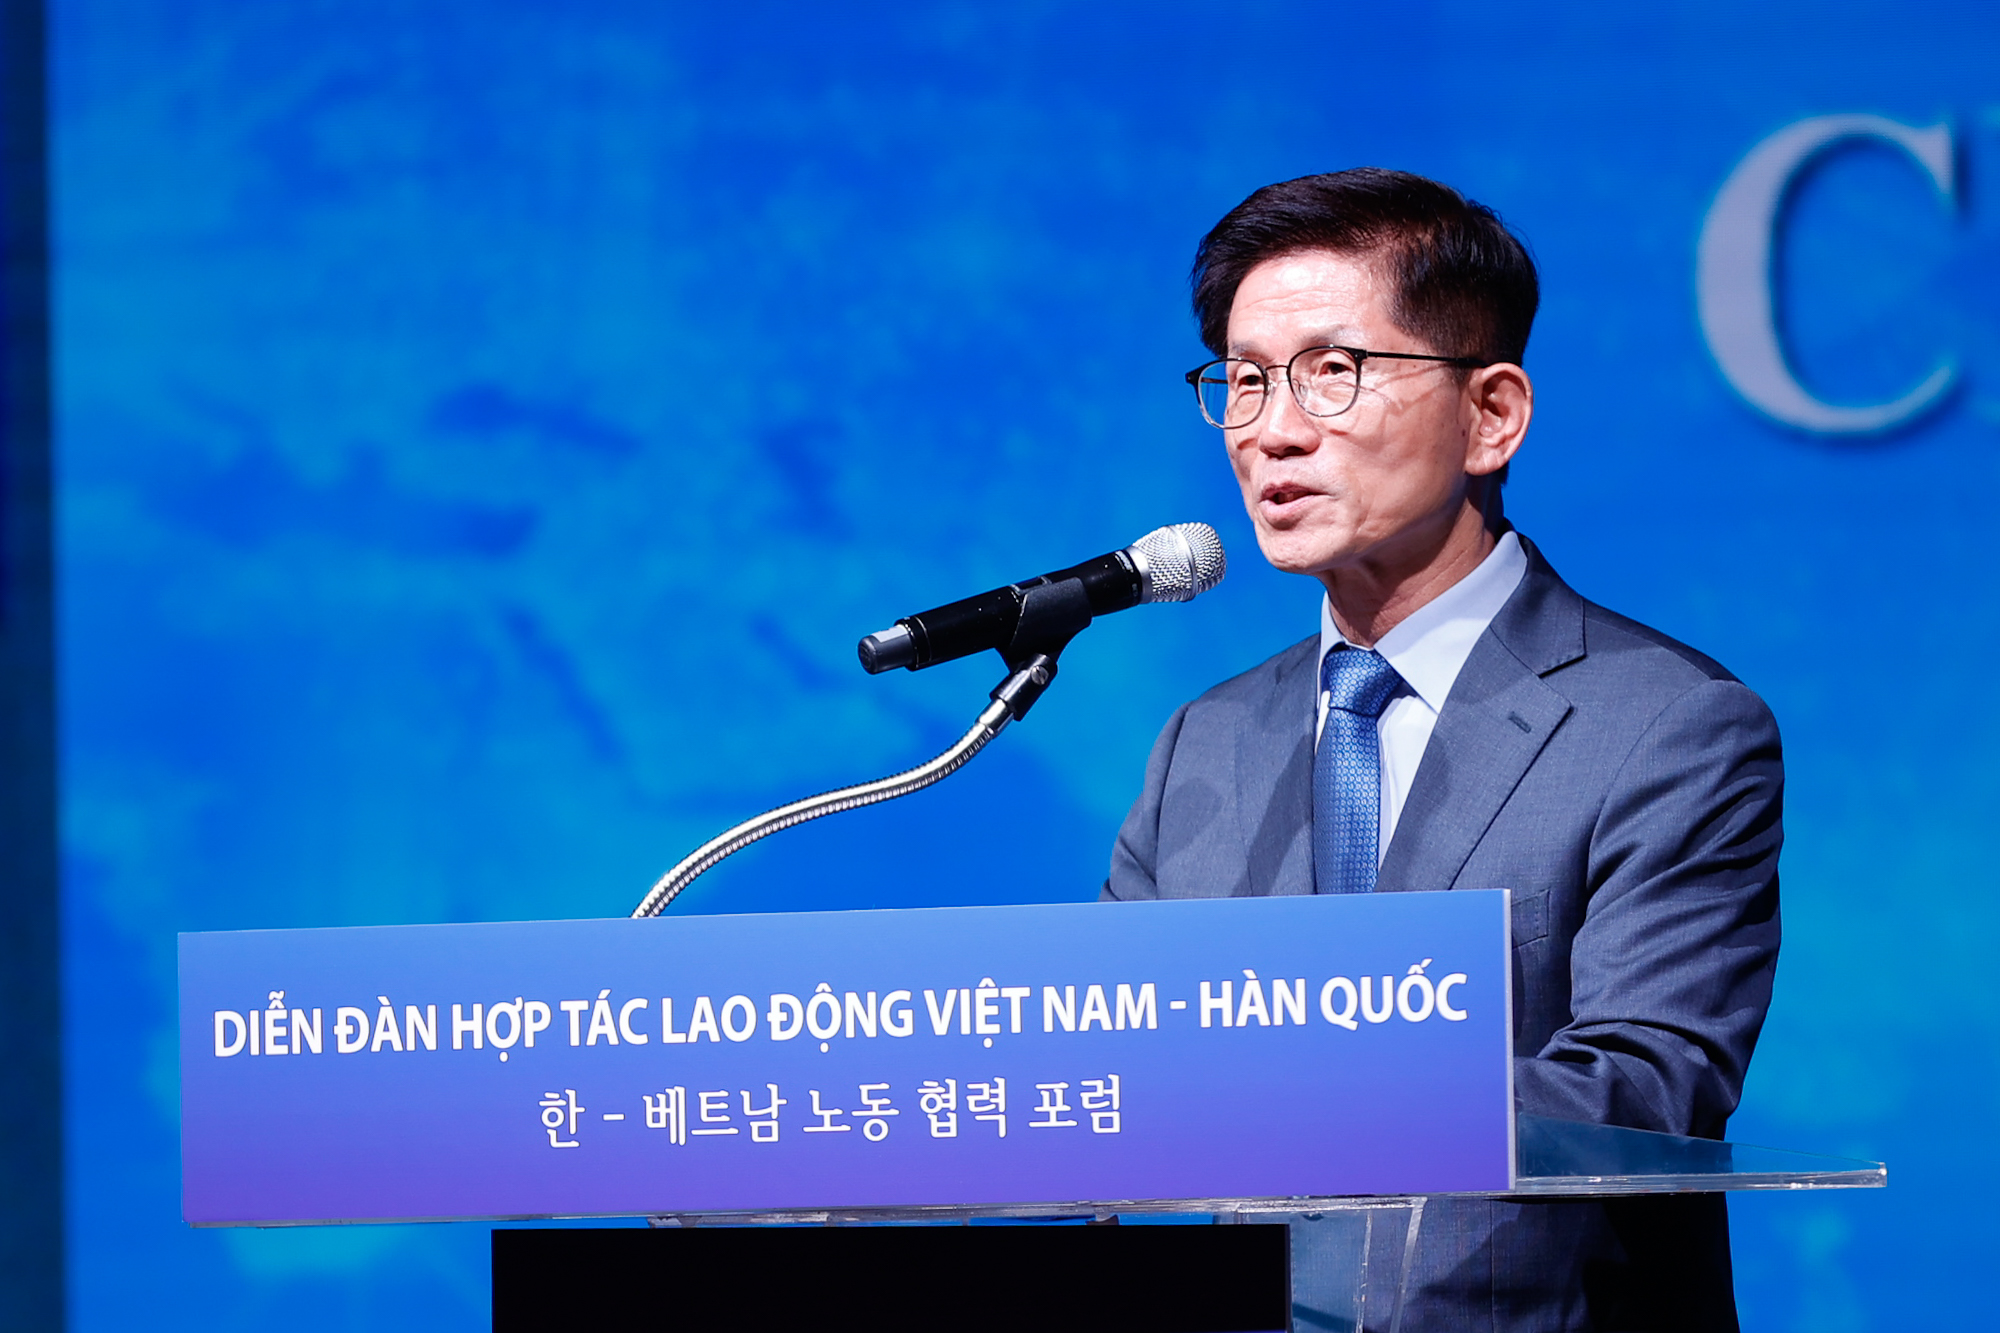 Tạo thuận lợi nhất cho người lao động, nâng tầm hợp tác lao động Việt Nam-Hàn Quốc - ảnh 6